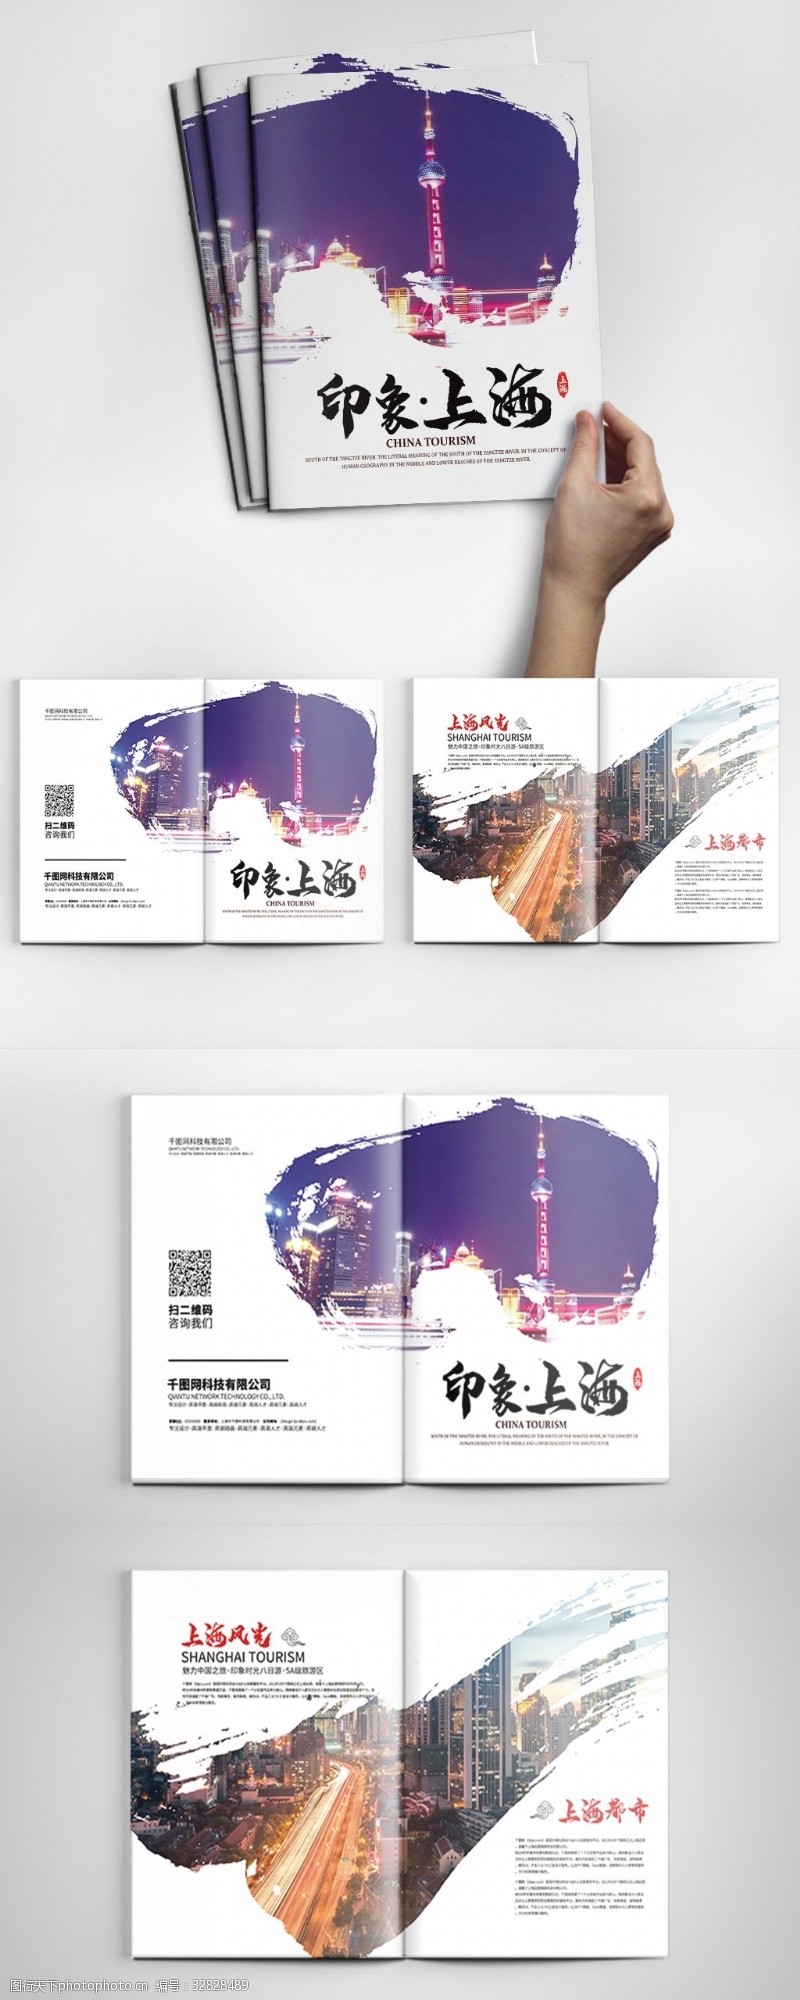 画册封面模板下载中国风大气时尚上海旅游宣传画册